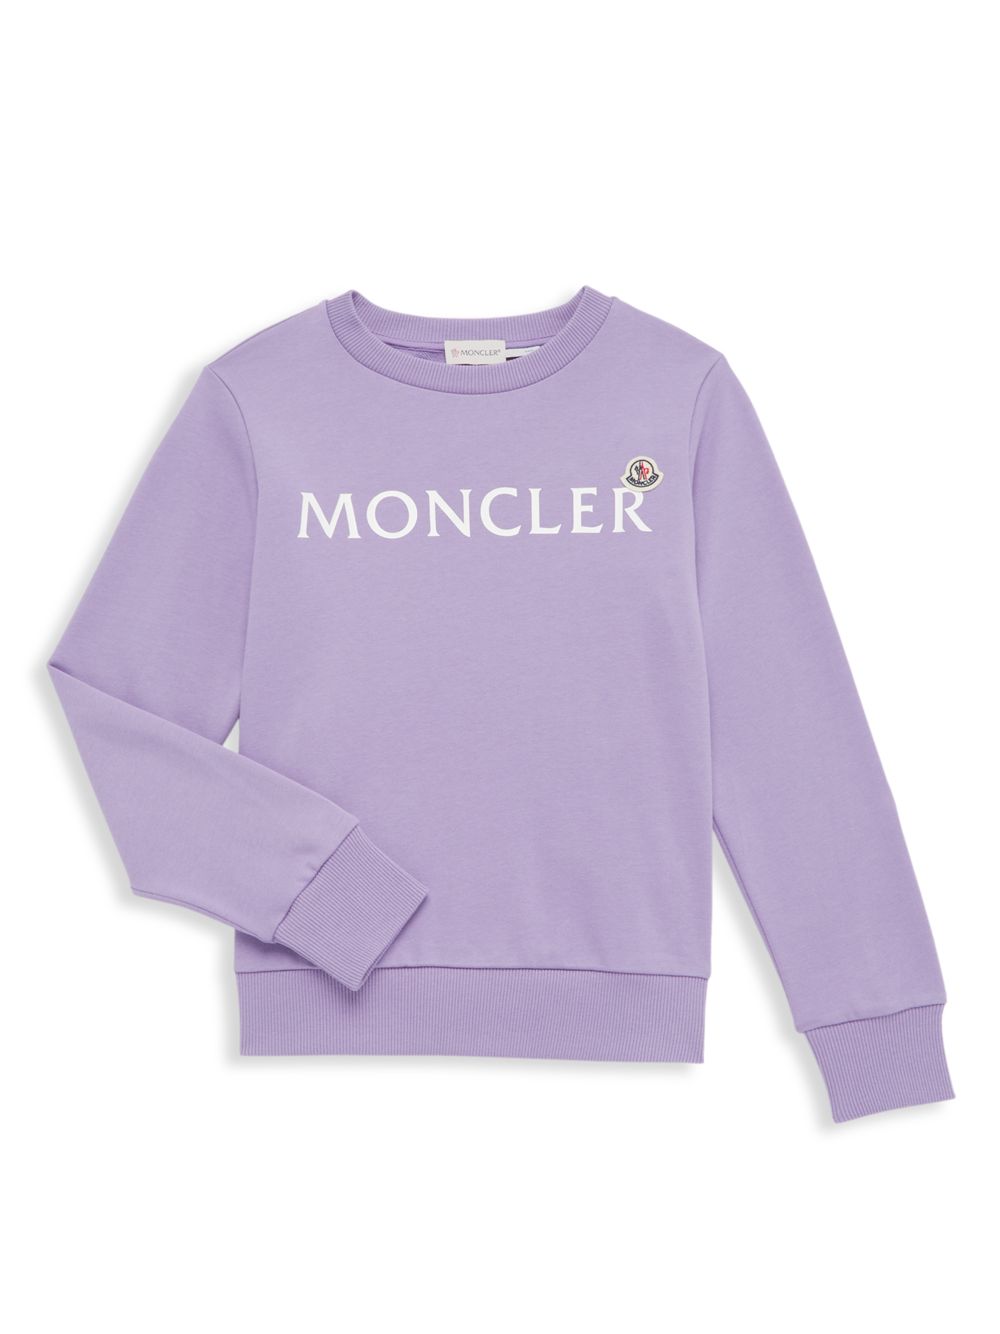 Хлопковая толстовка с логотипом для маленьких девочек и девочек Moncler, фиолетовый